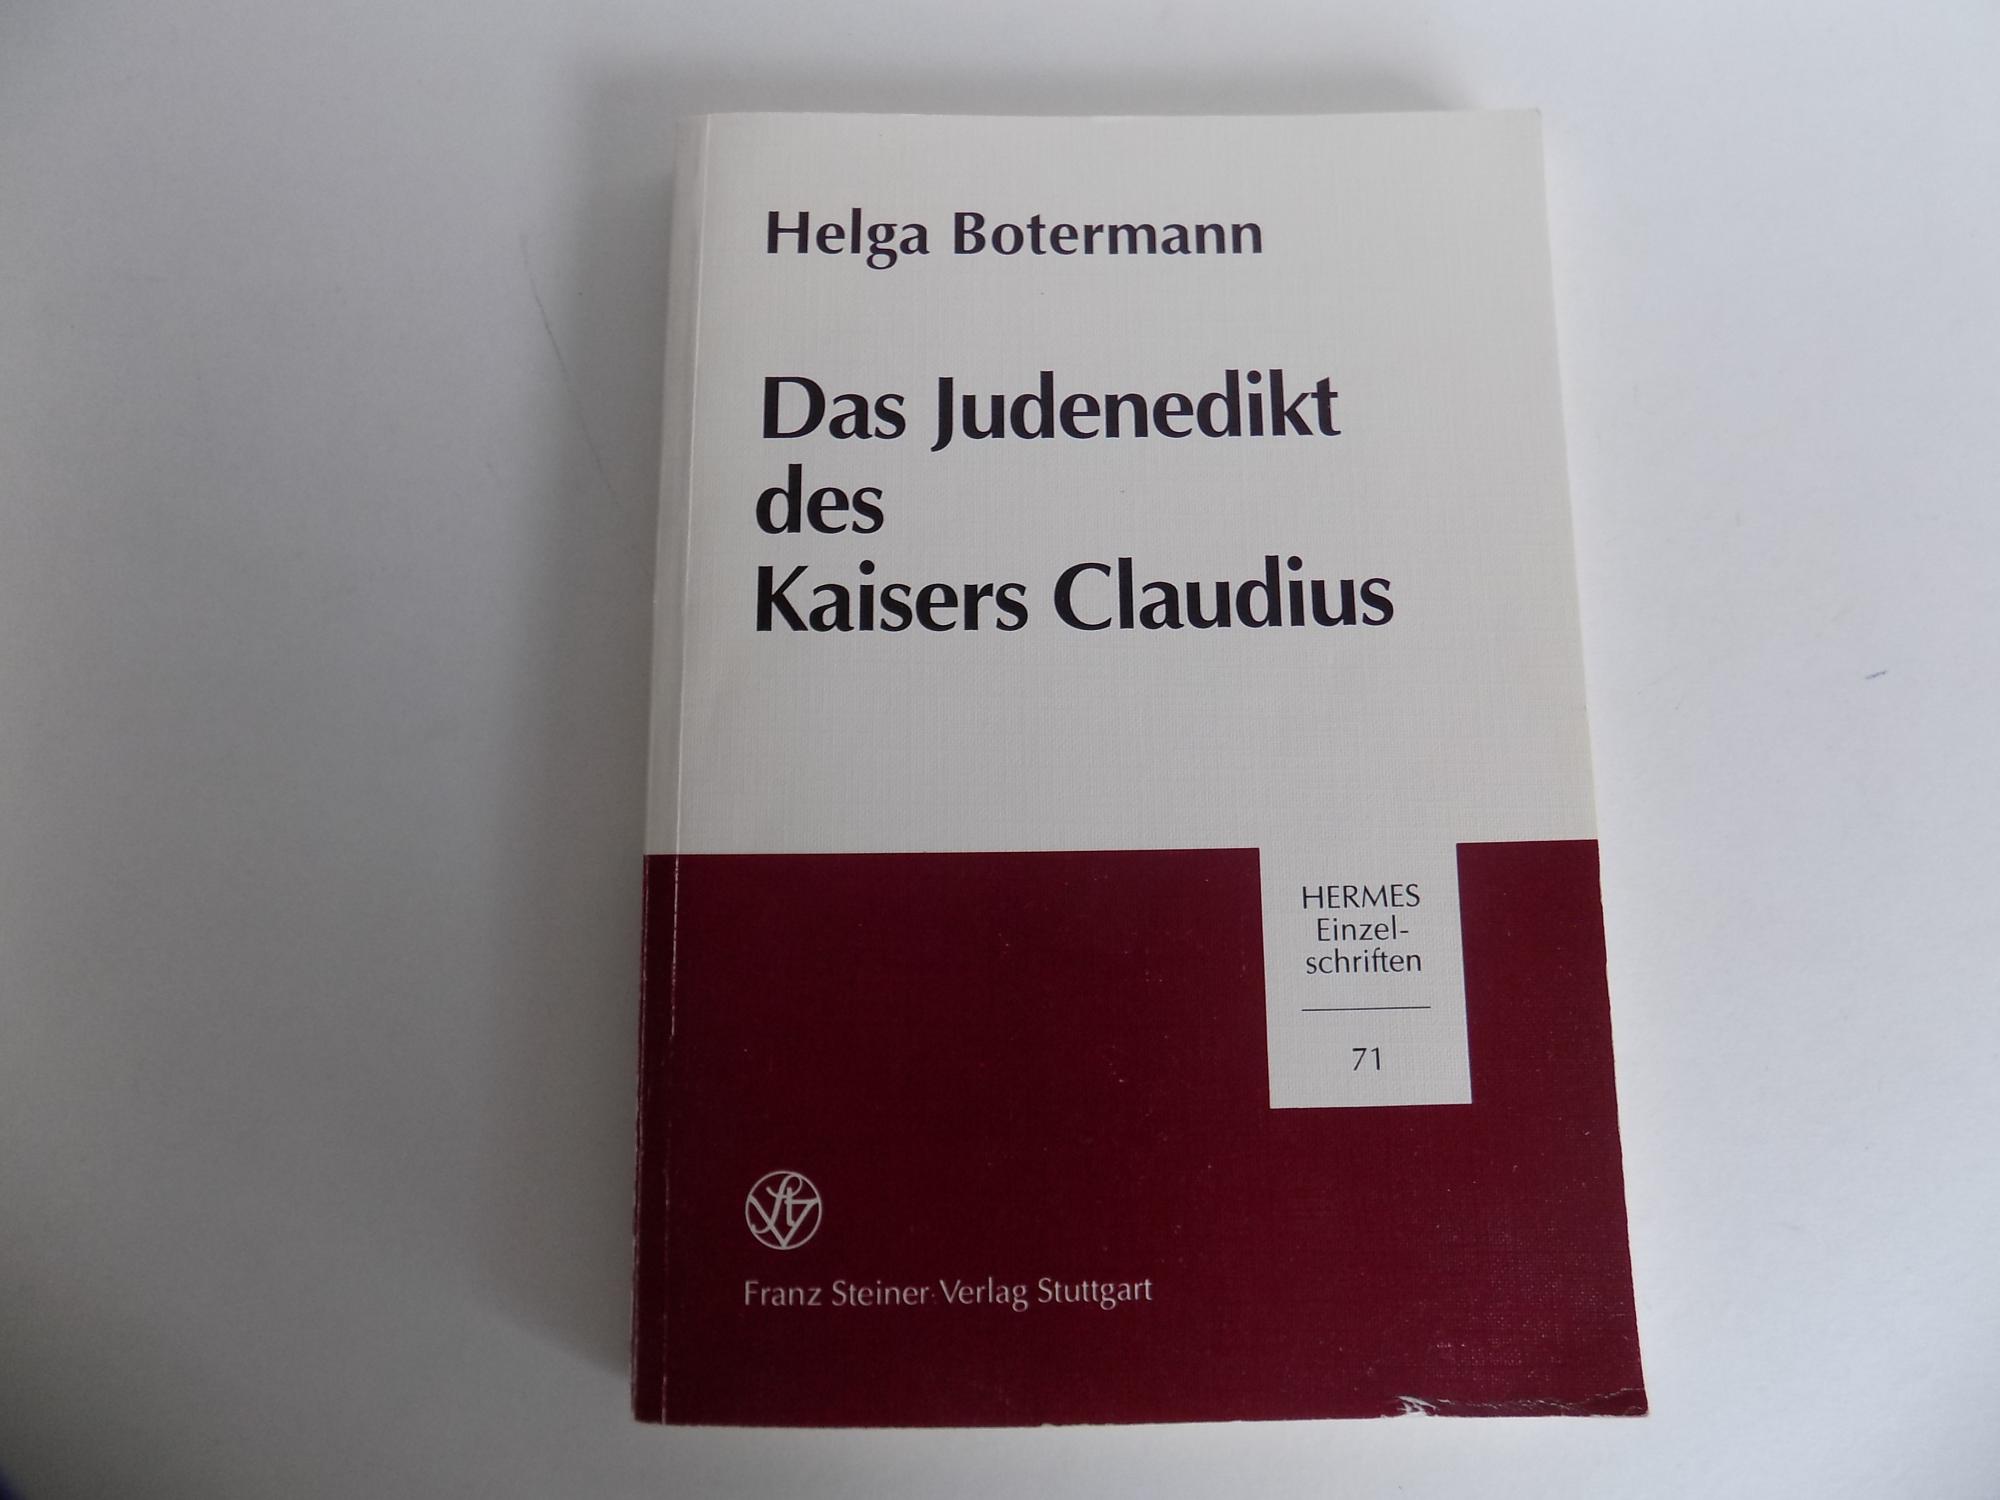 Das Judenedikt des Kaisers Claudius. Römischer Staat und Christiani im 1. Jahrhundert (= Hermes Einzelschriften, Heft 71).